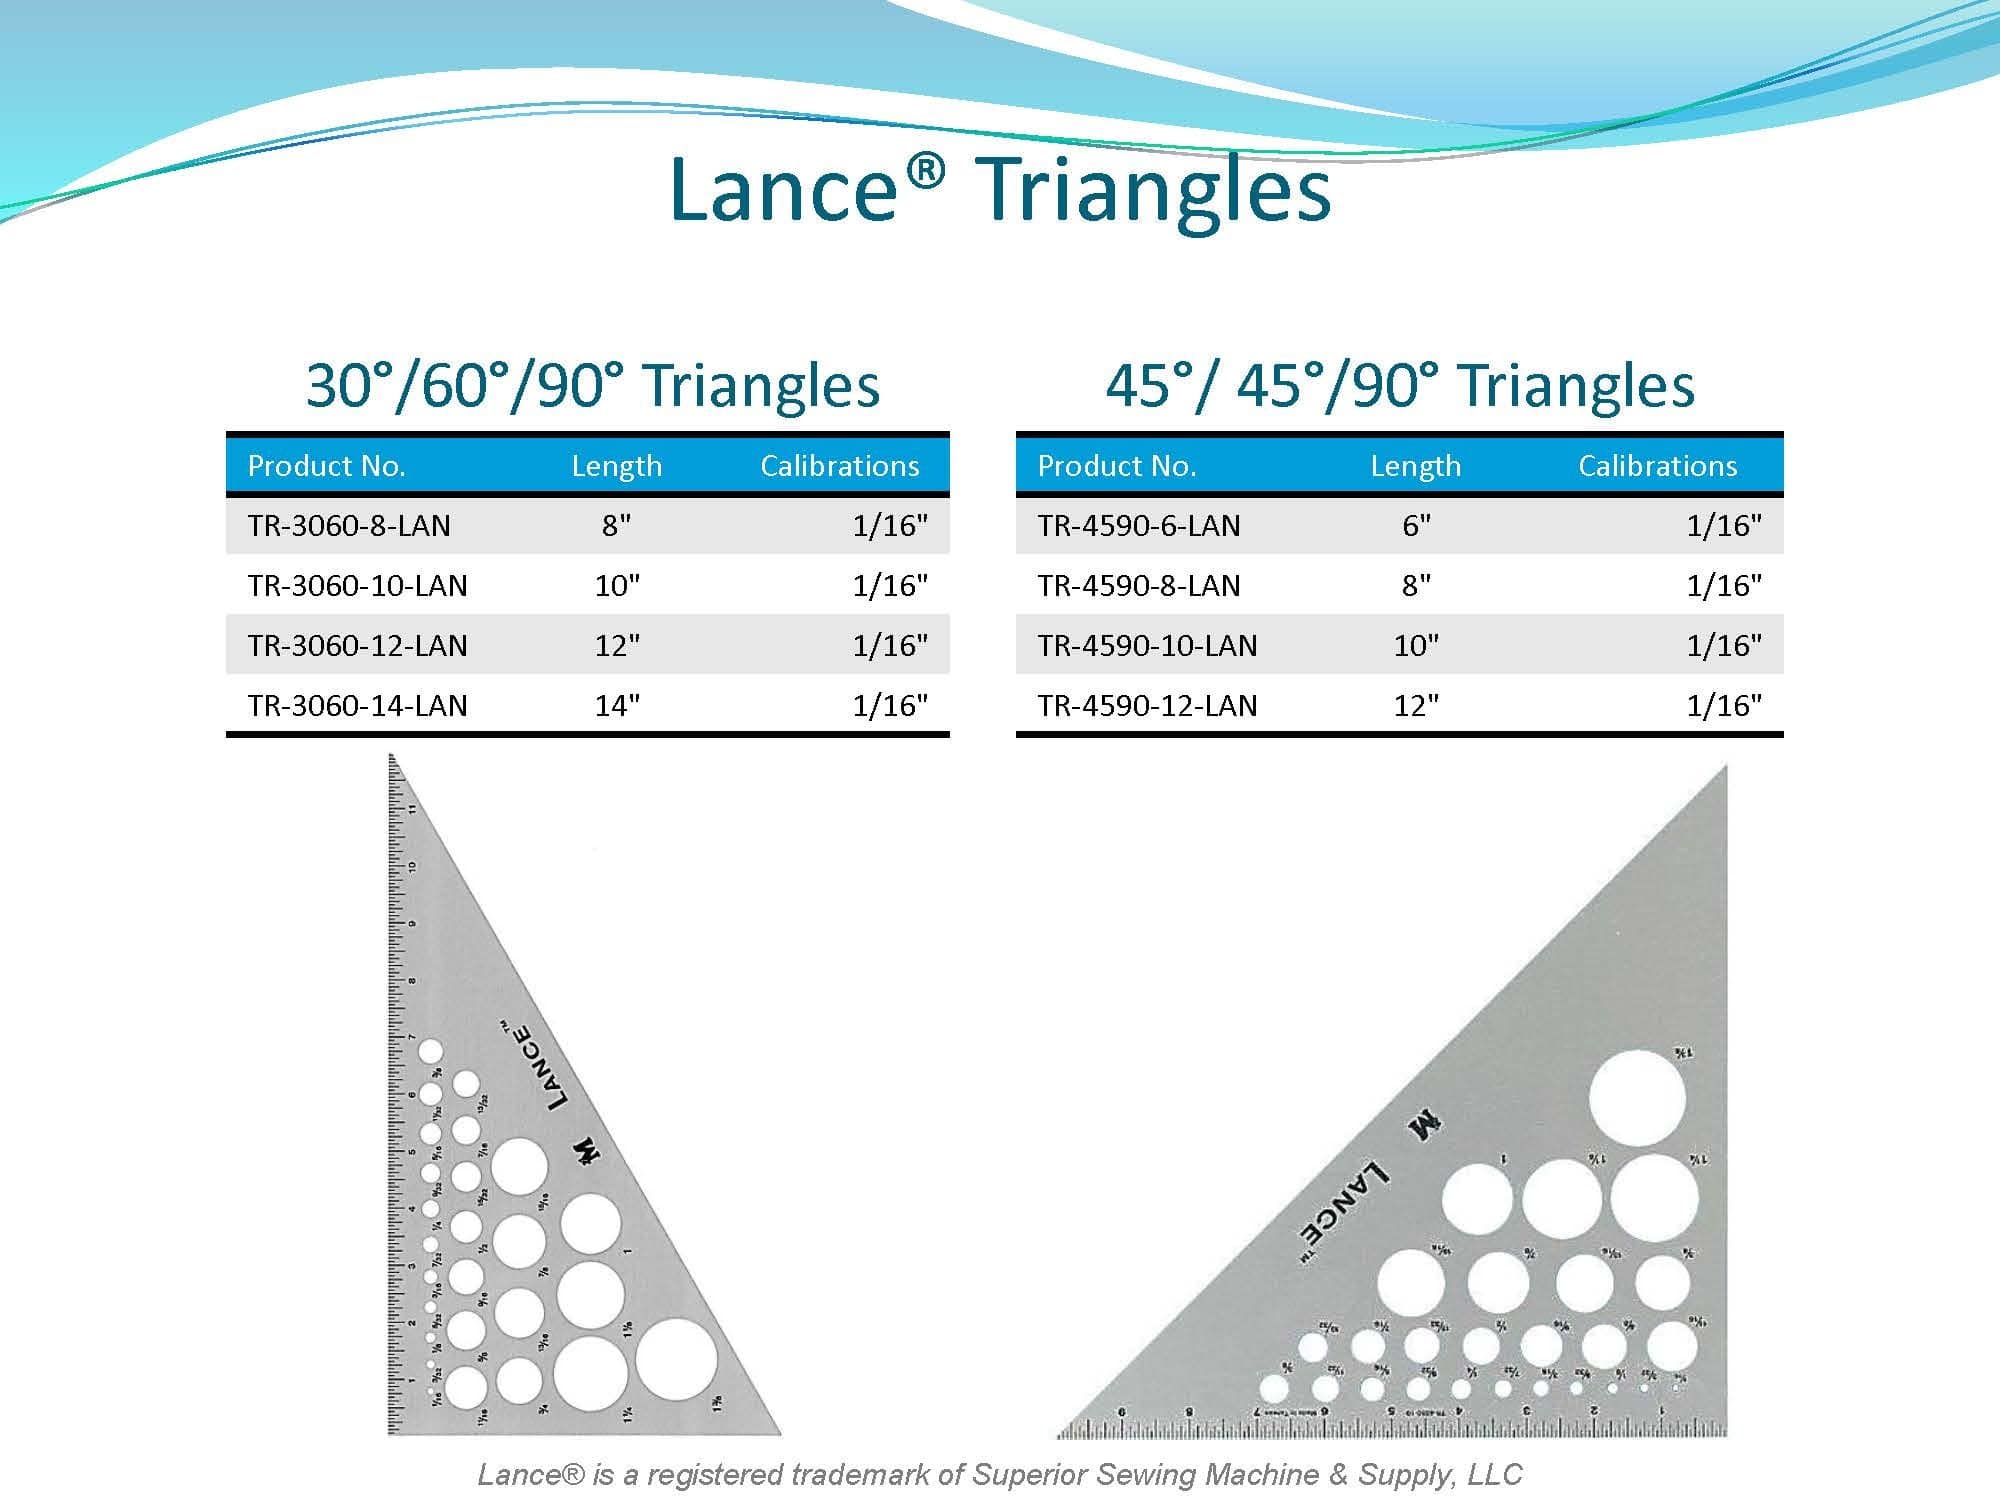 LANCE TRIANGLES
30/ 60/ 90 DEGREE TRIANGLES
45/ 45/ 90 DEGREE TRIANGLES